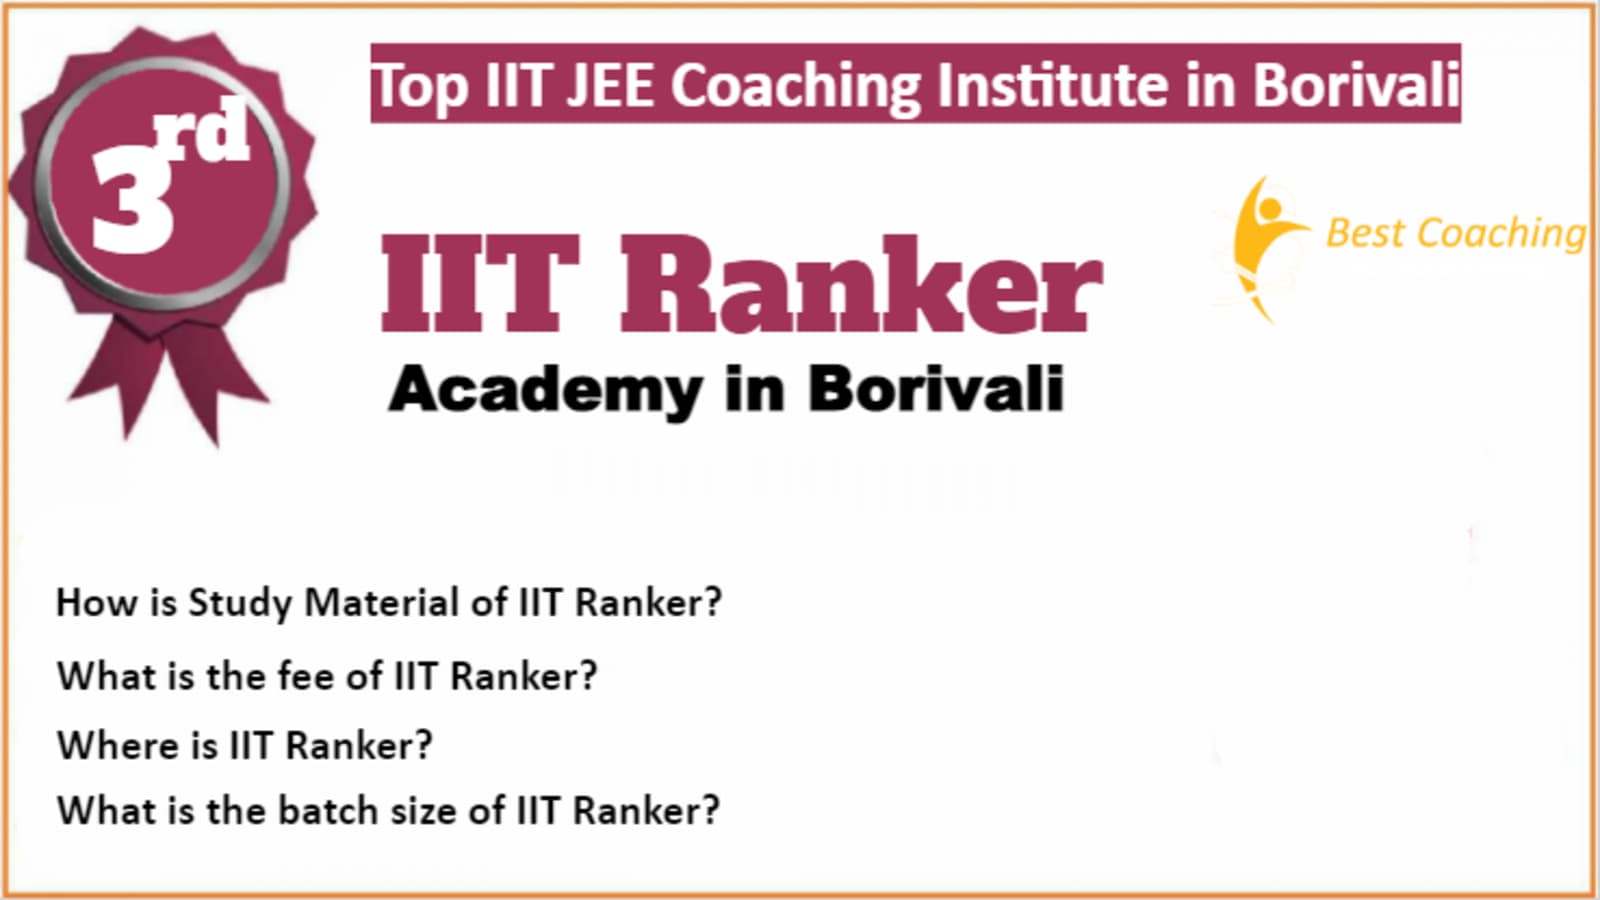 Rank 3 Top IIT JEE Coaching in Borivali